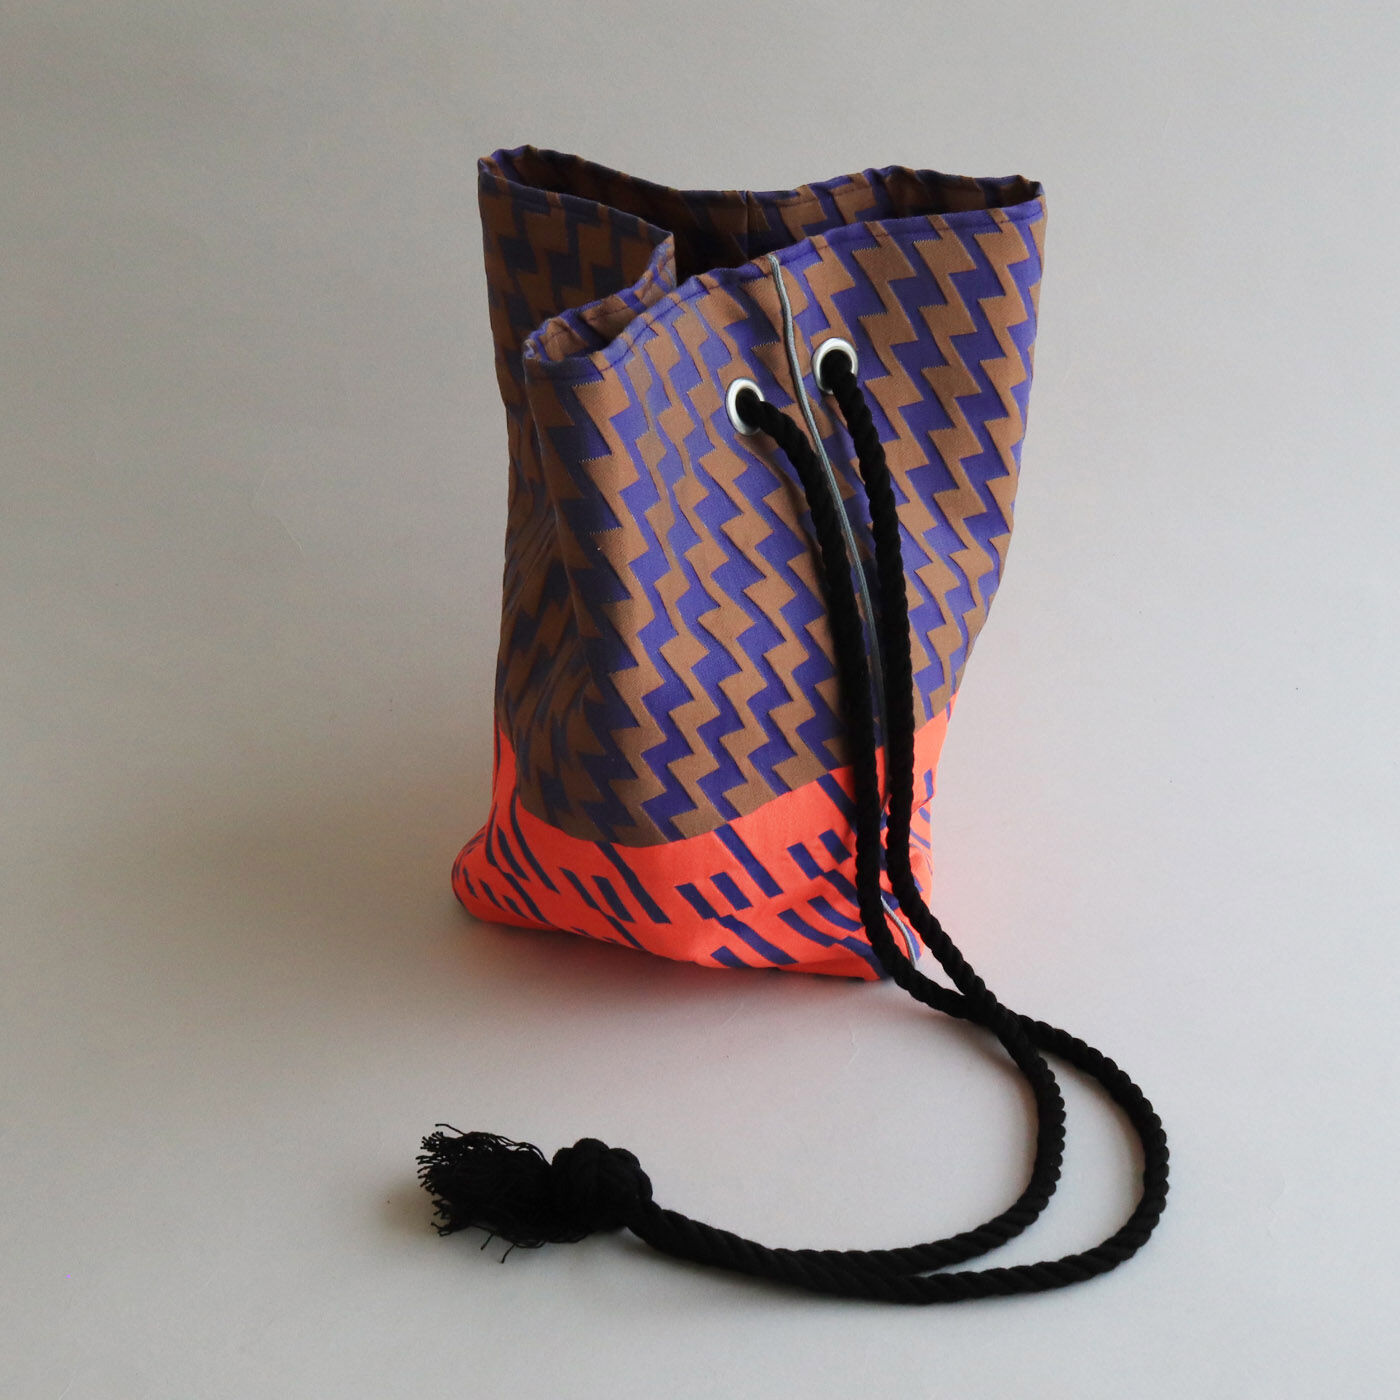 ＆Stories|テキスタイルデザイナーと作った 播州織のダズリングバッグ〈サンセット〉|シャープなシルエットなので大人っぽく使える巾着バッグです。